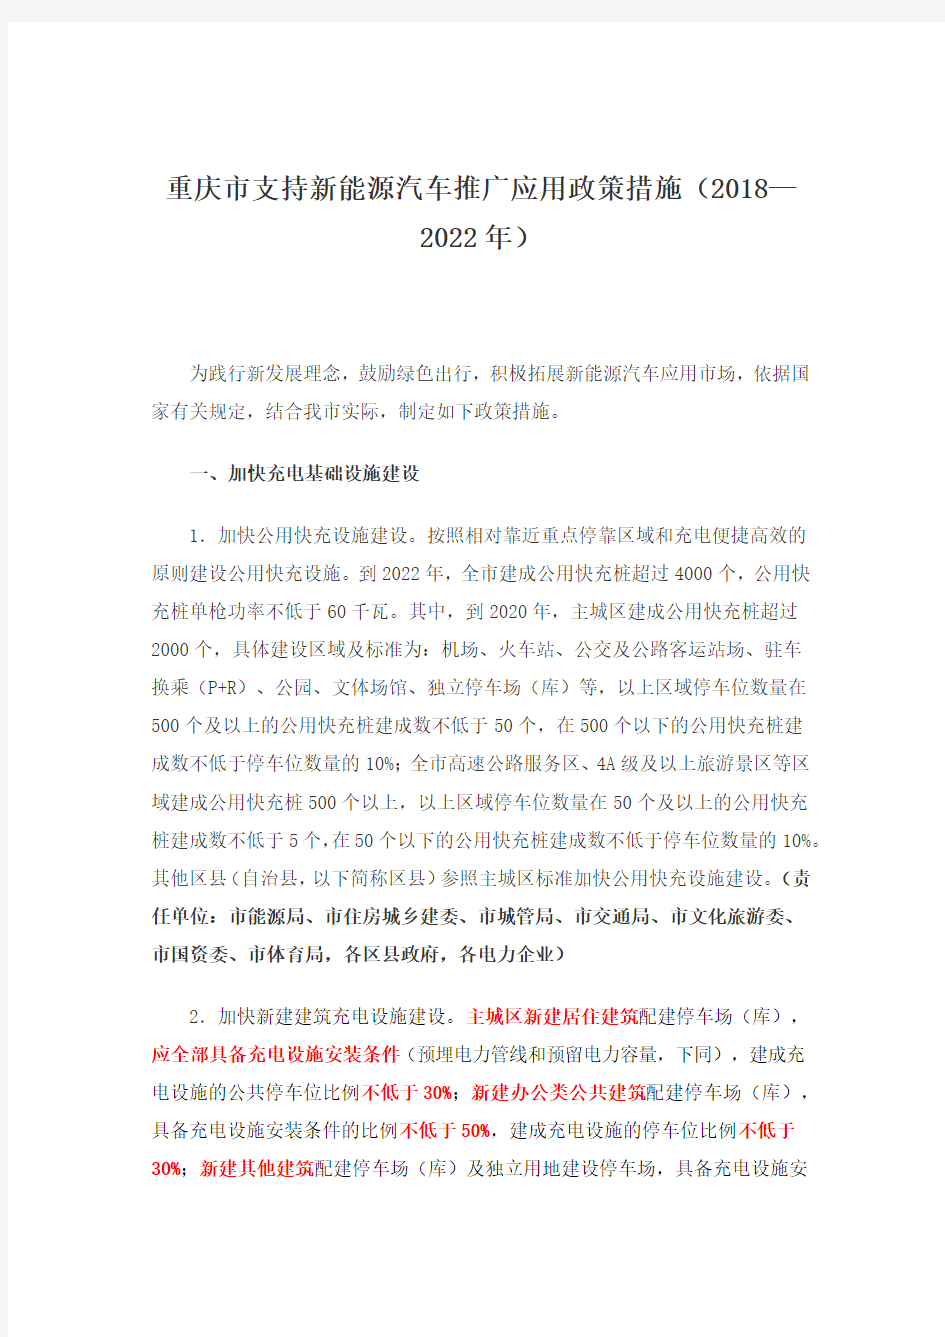 重庆市支持新能源汽车推广应用政策措施(2018—2022年)的通知